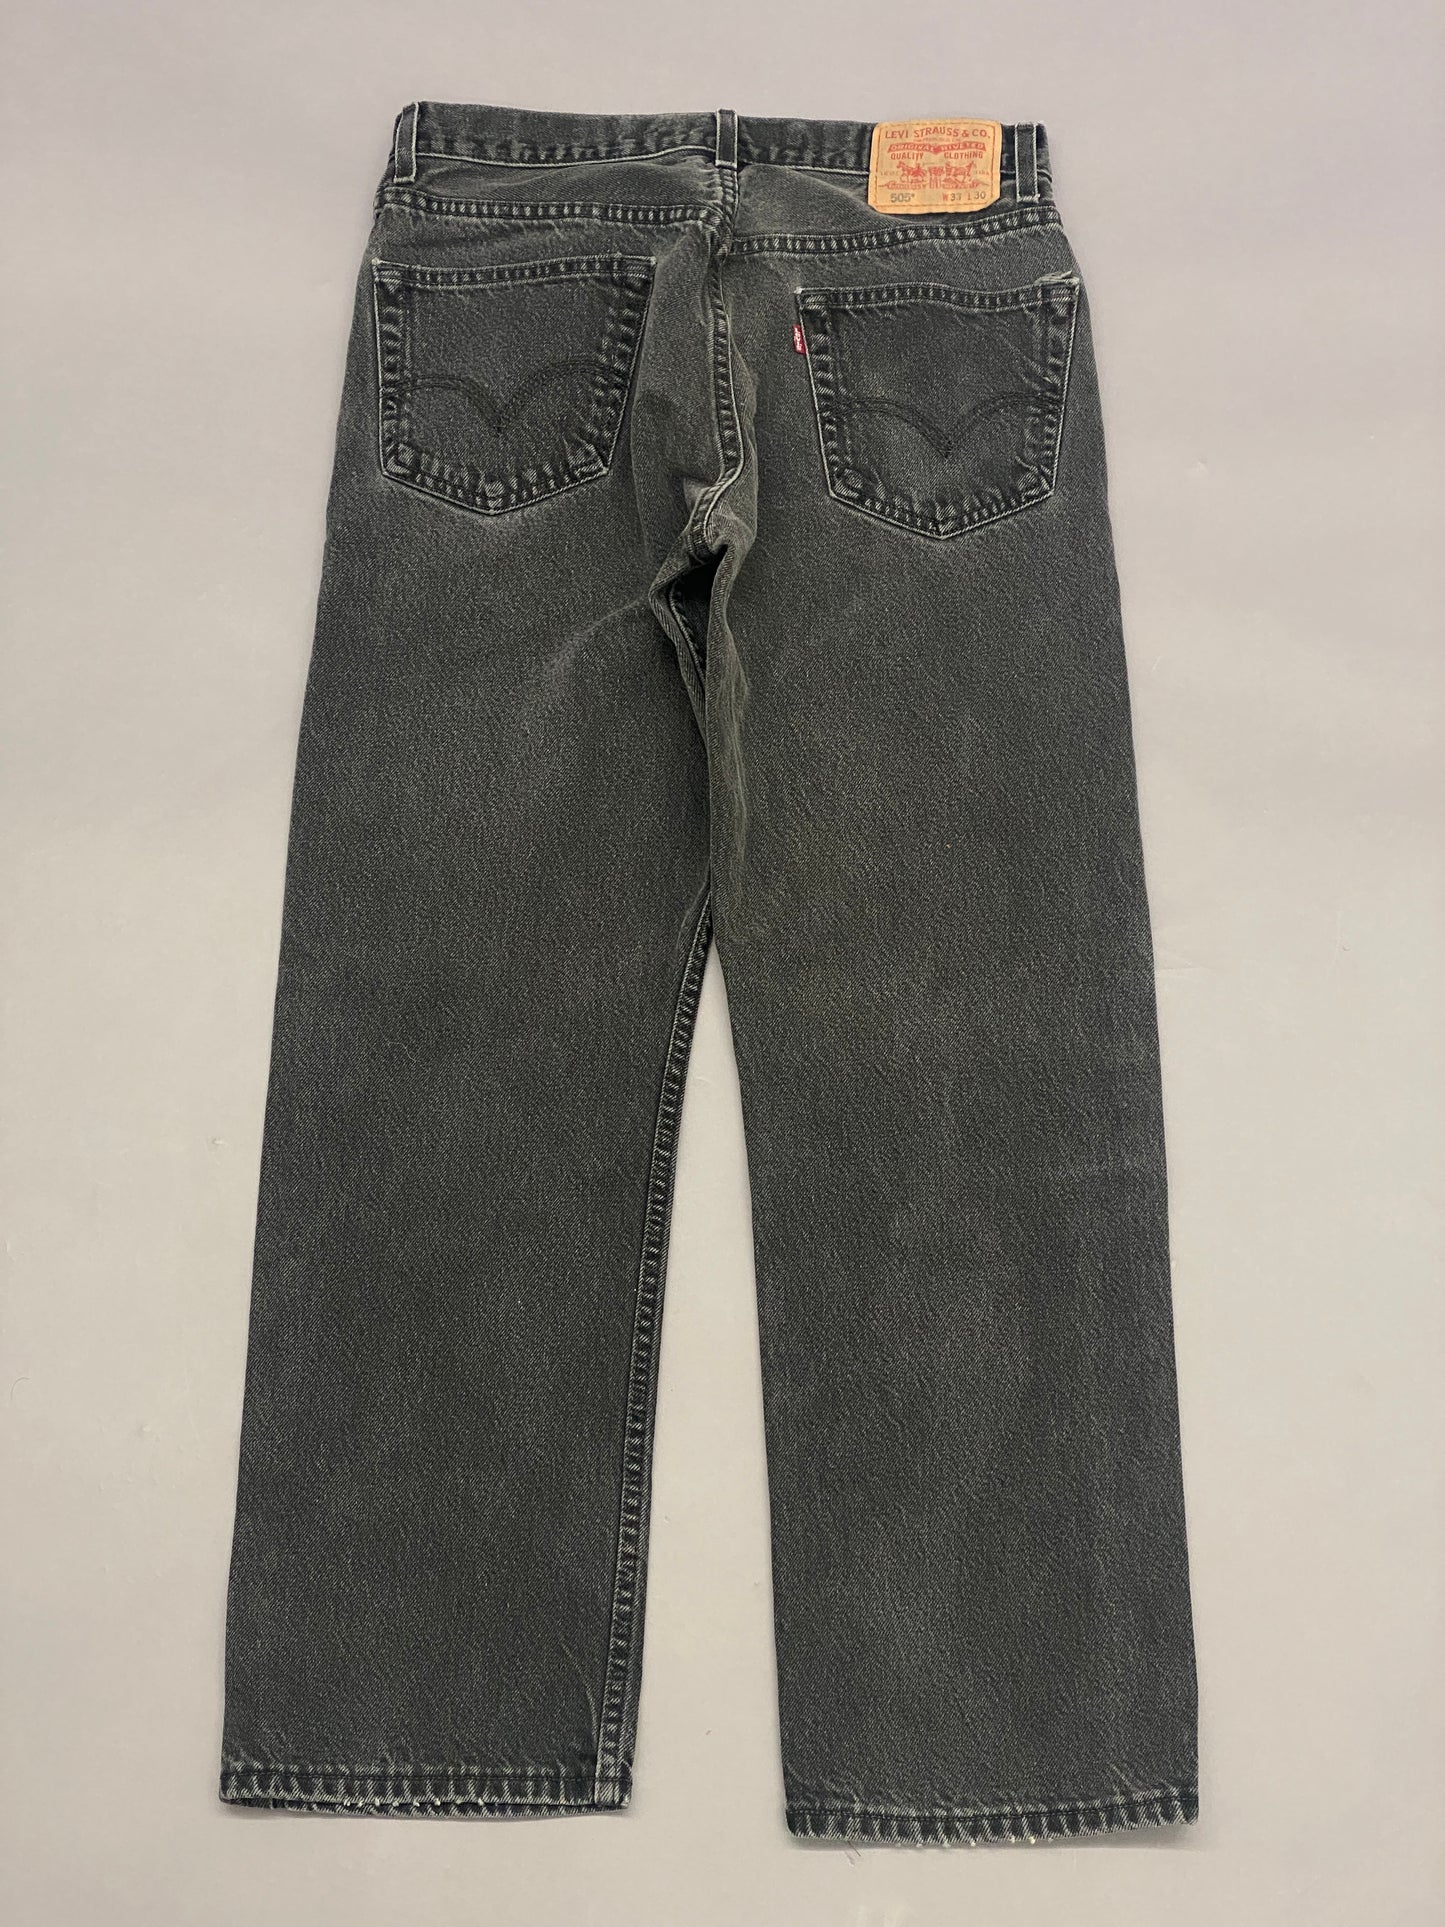 Levis 505 Jeans - 33x30